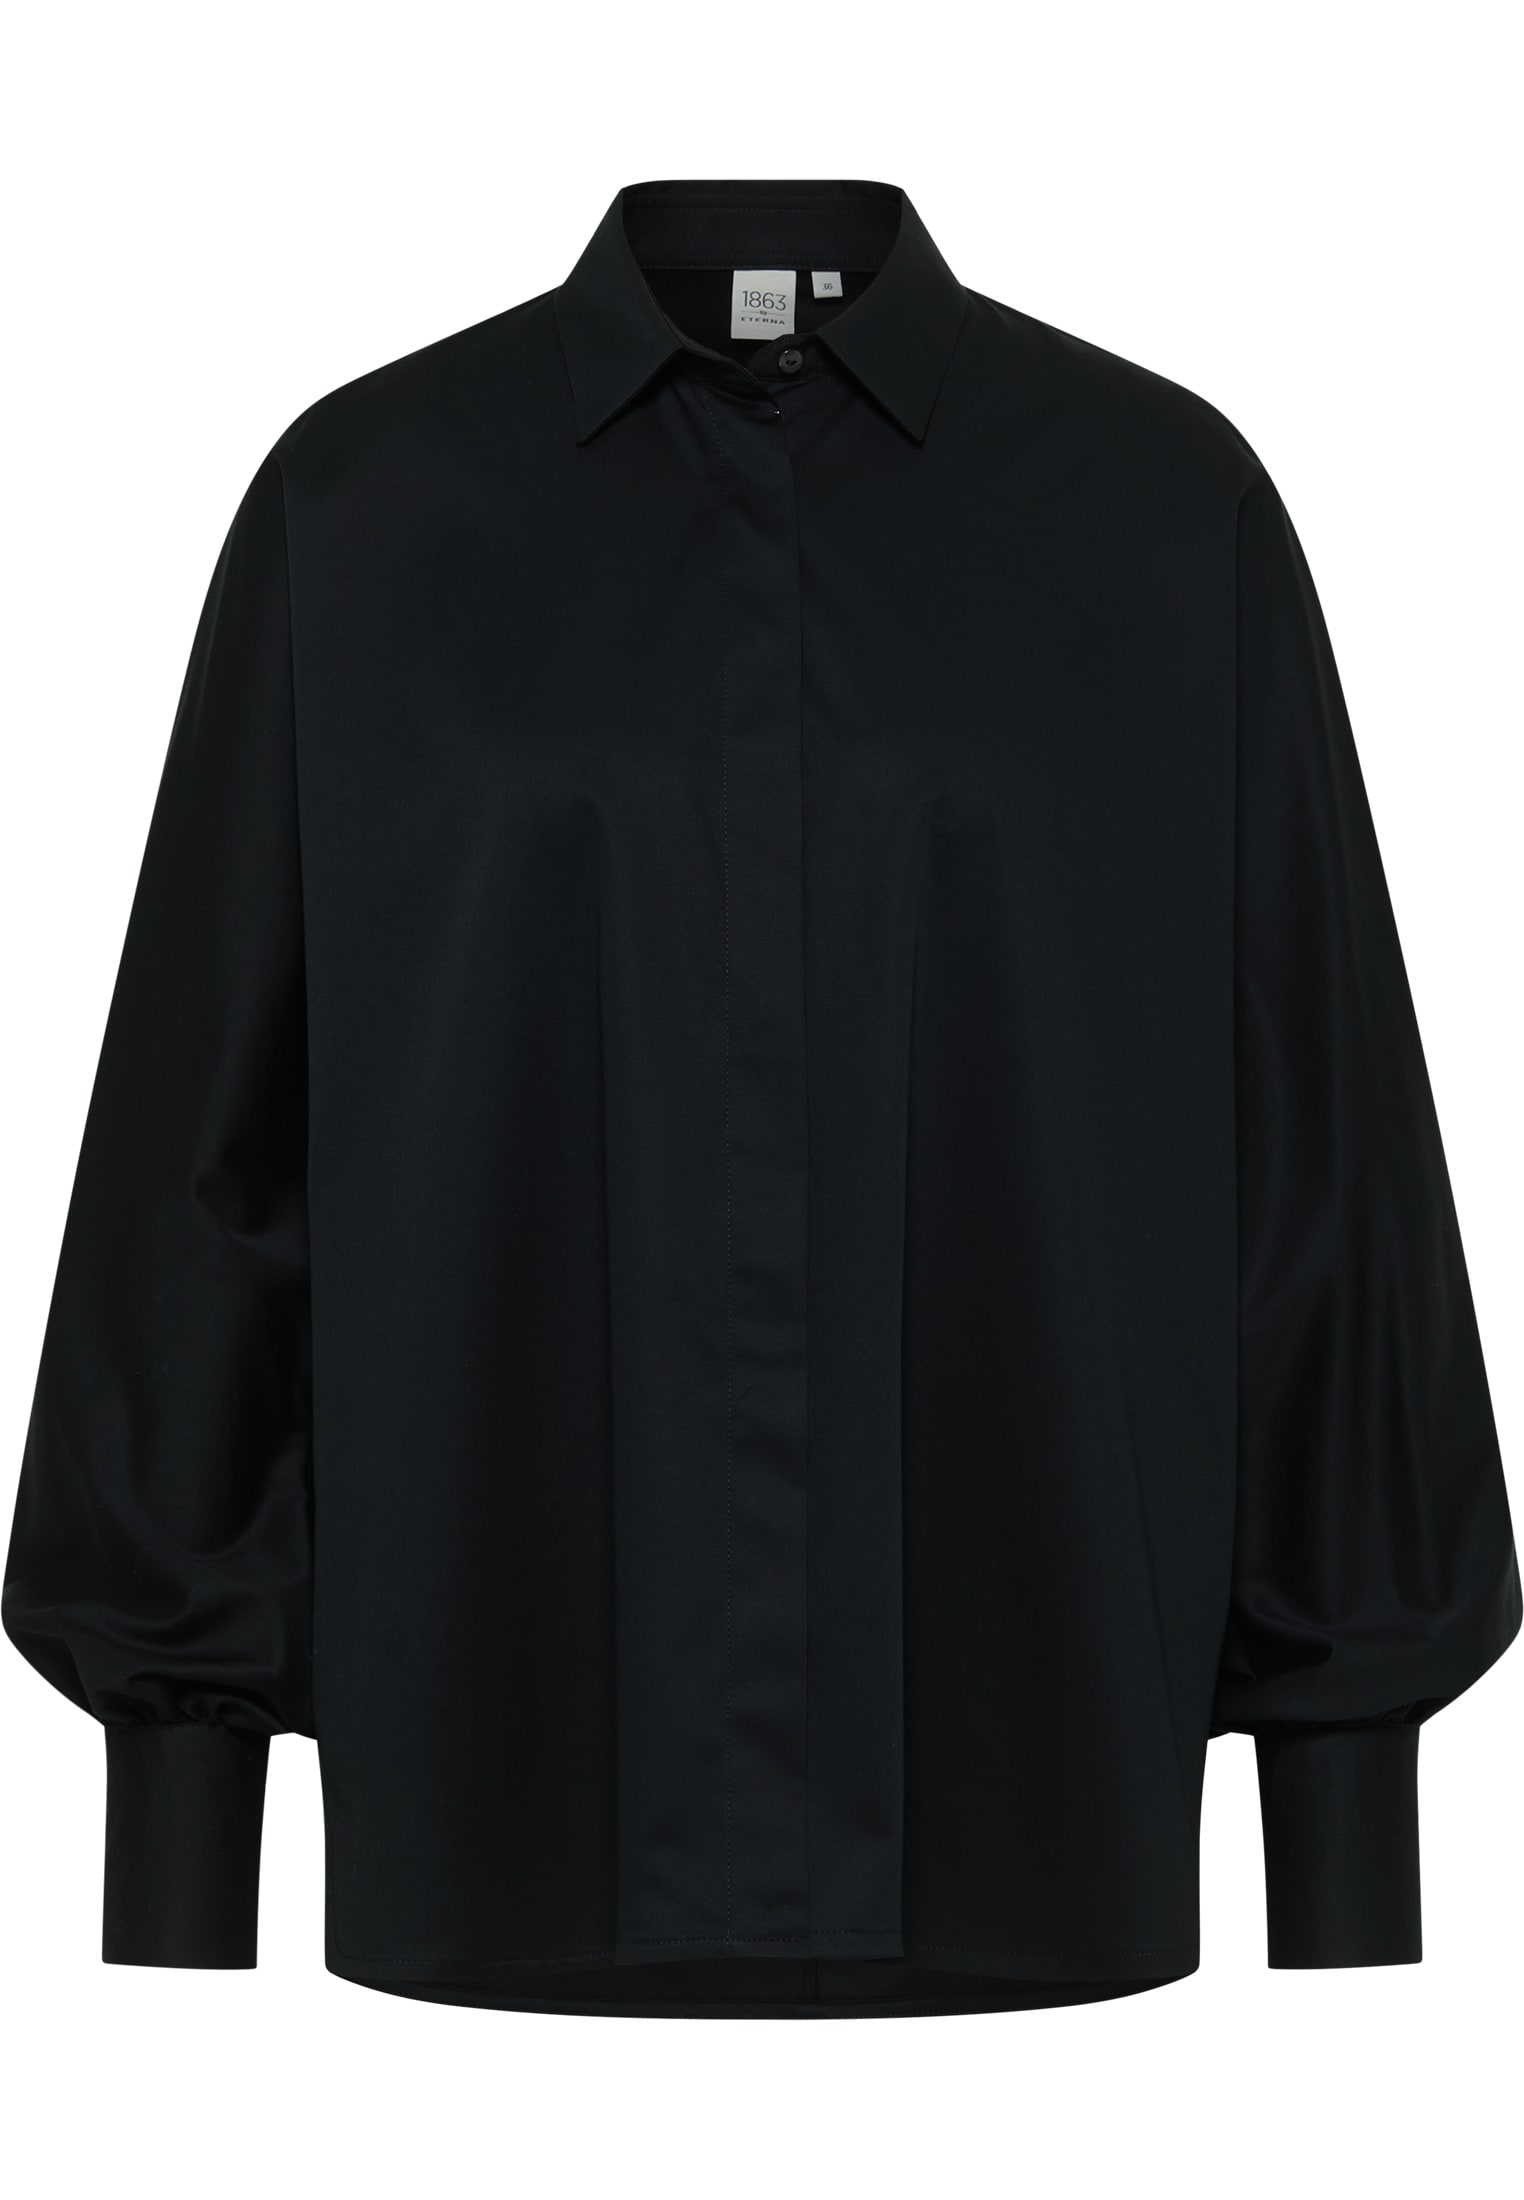 | in schwarz | | 2BL04026-03-91-40-1/1 Langarm 40 unifarben Bluse | Satin schwarz Shirt